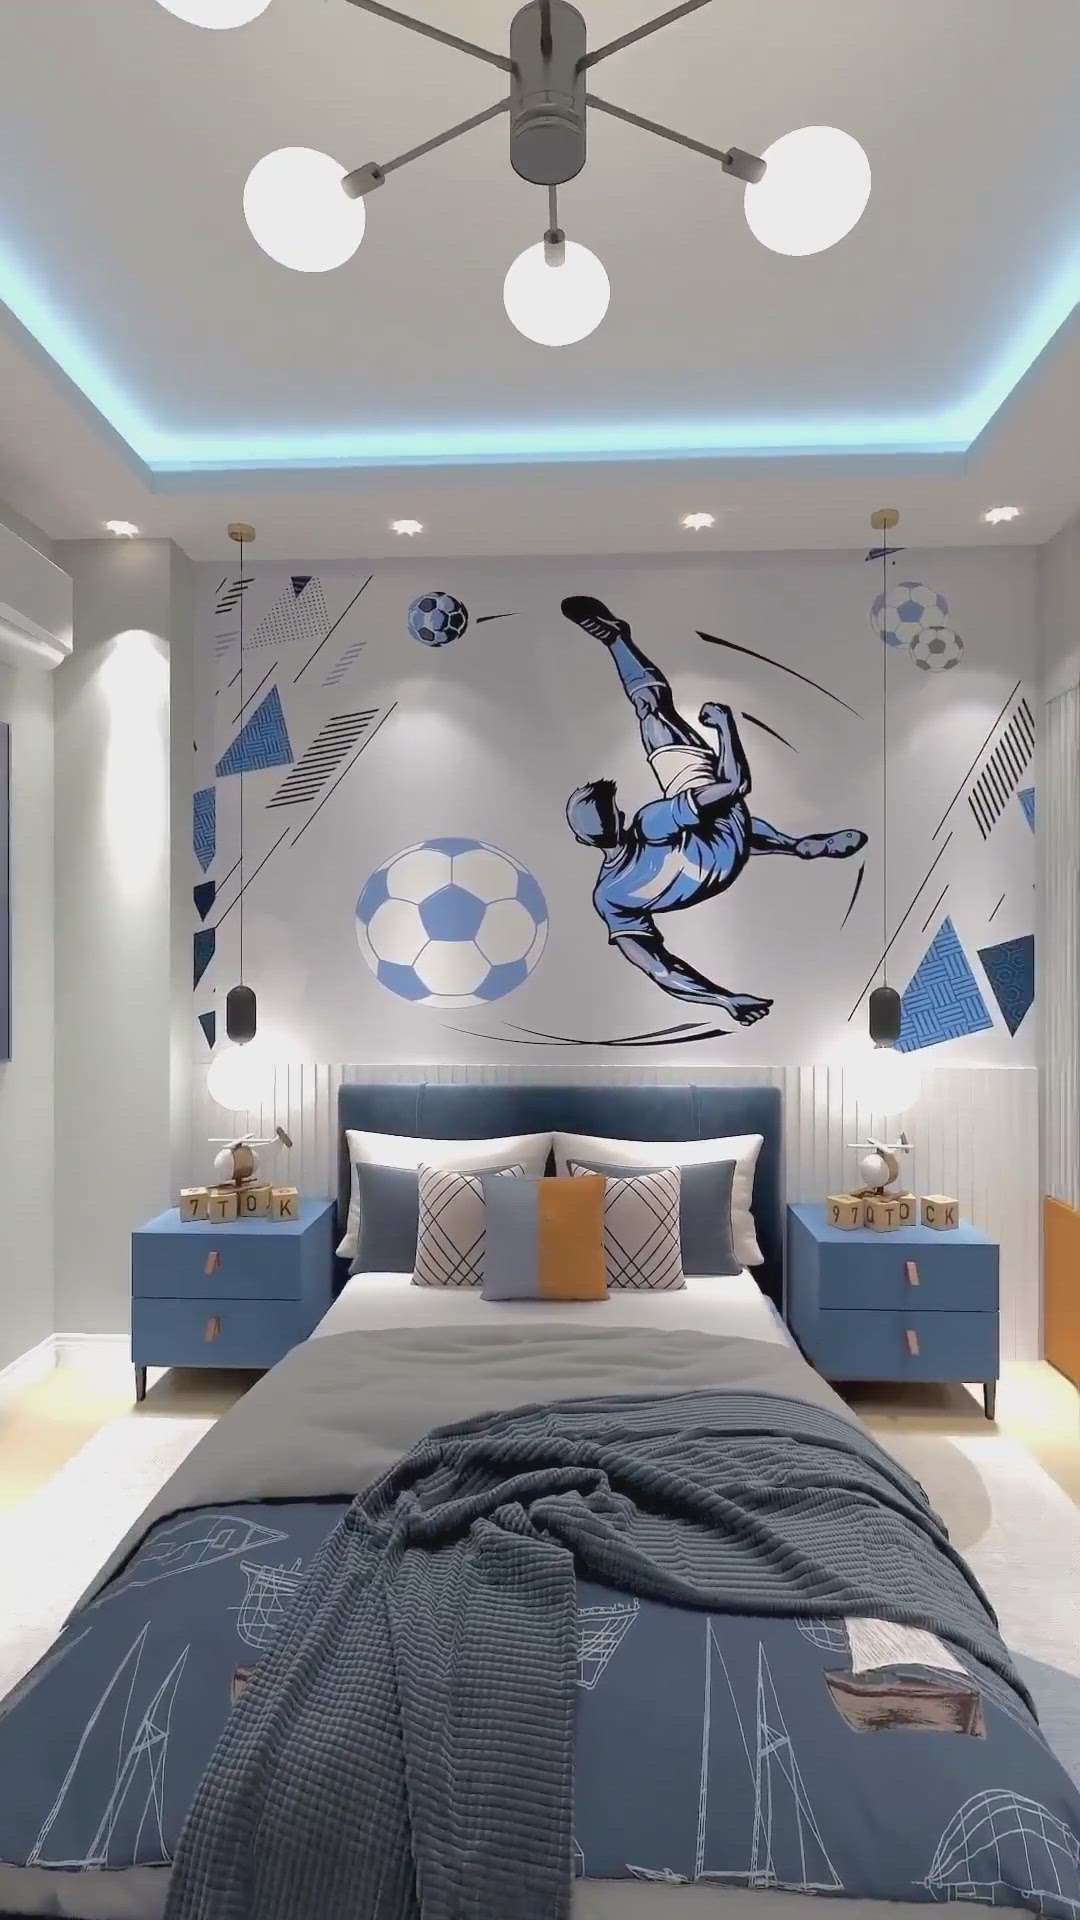 Boys' Bedroom concept
a unique design 😍😍
#masterbedroomdesinger 
#reflexinterior